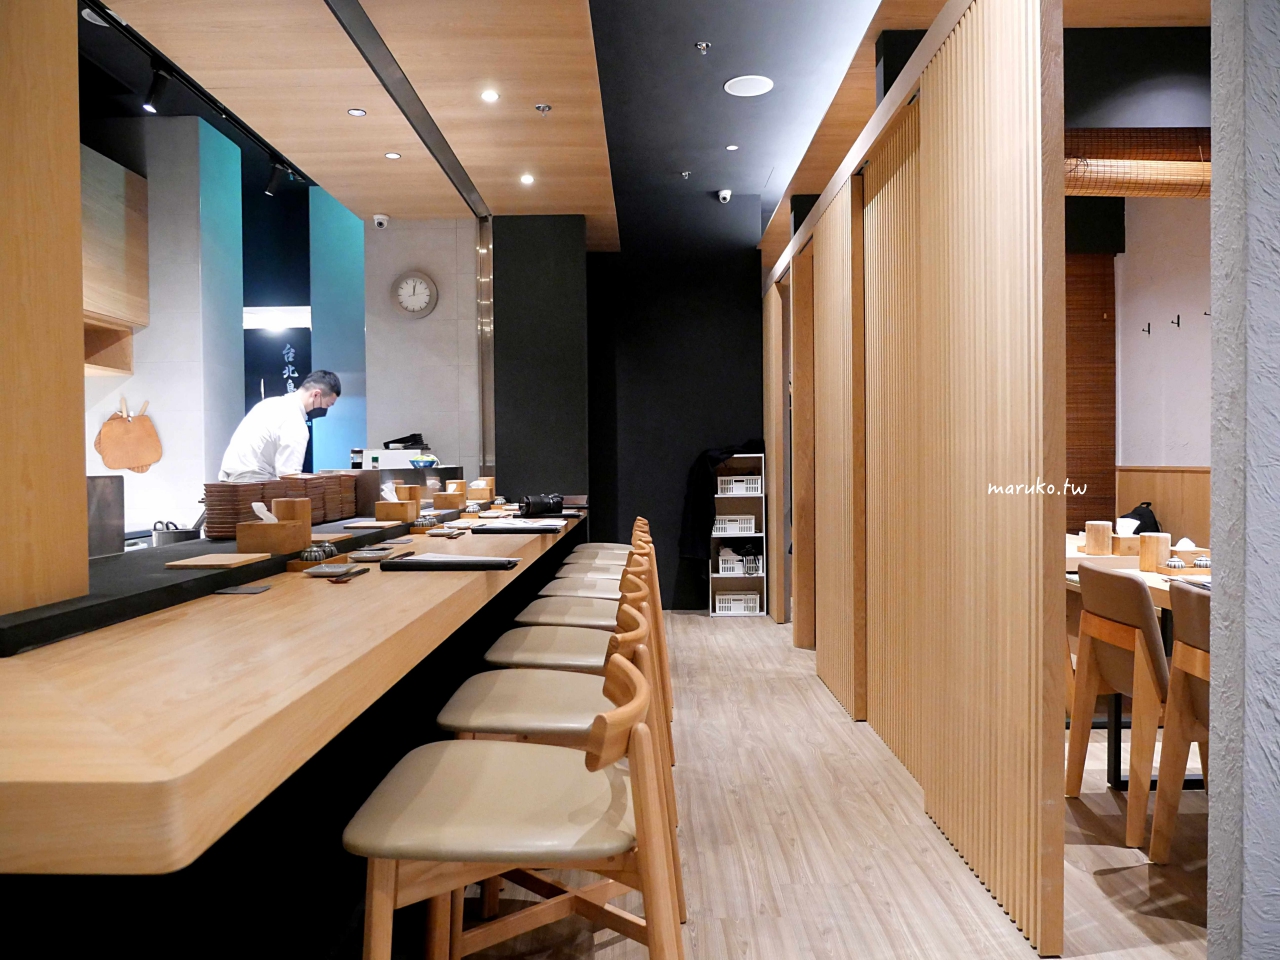 【台北】台北鳥喜 隱藏在五星級酒店內的米其林指南東京一星燒鳥專門店 @Maruko與美食有個約會